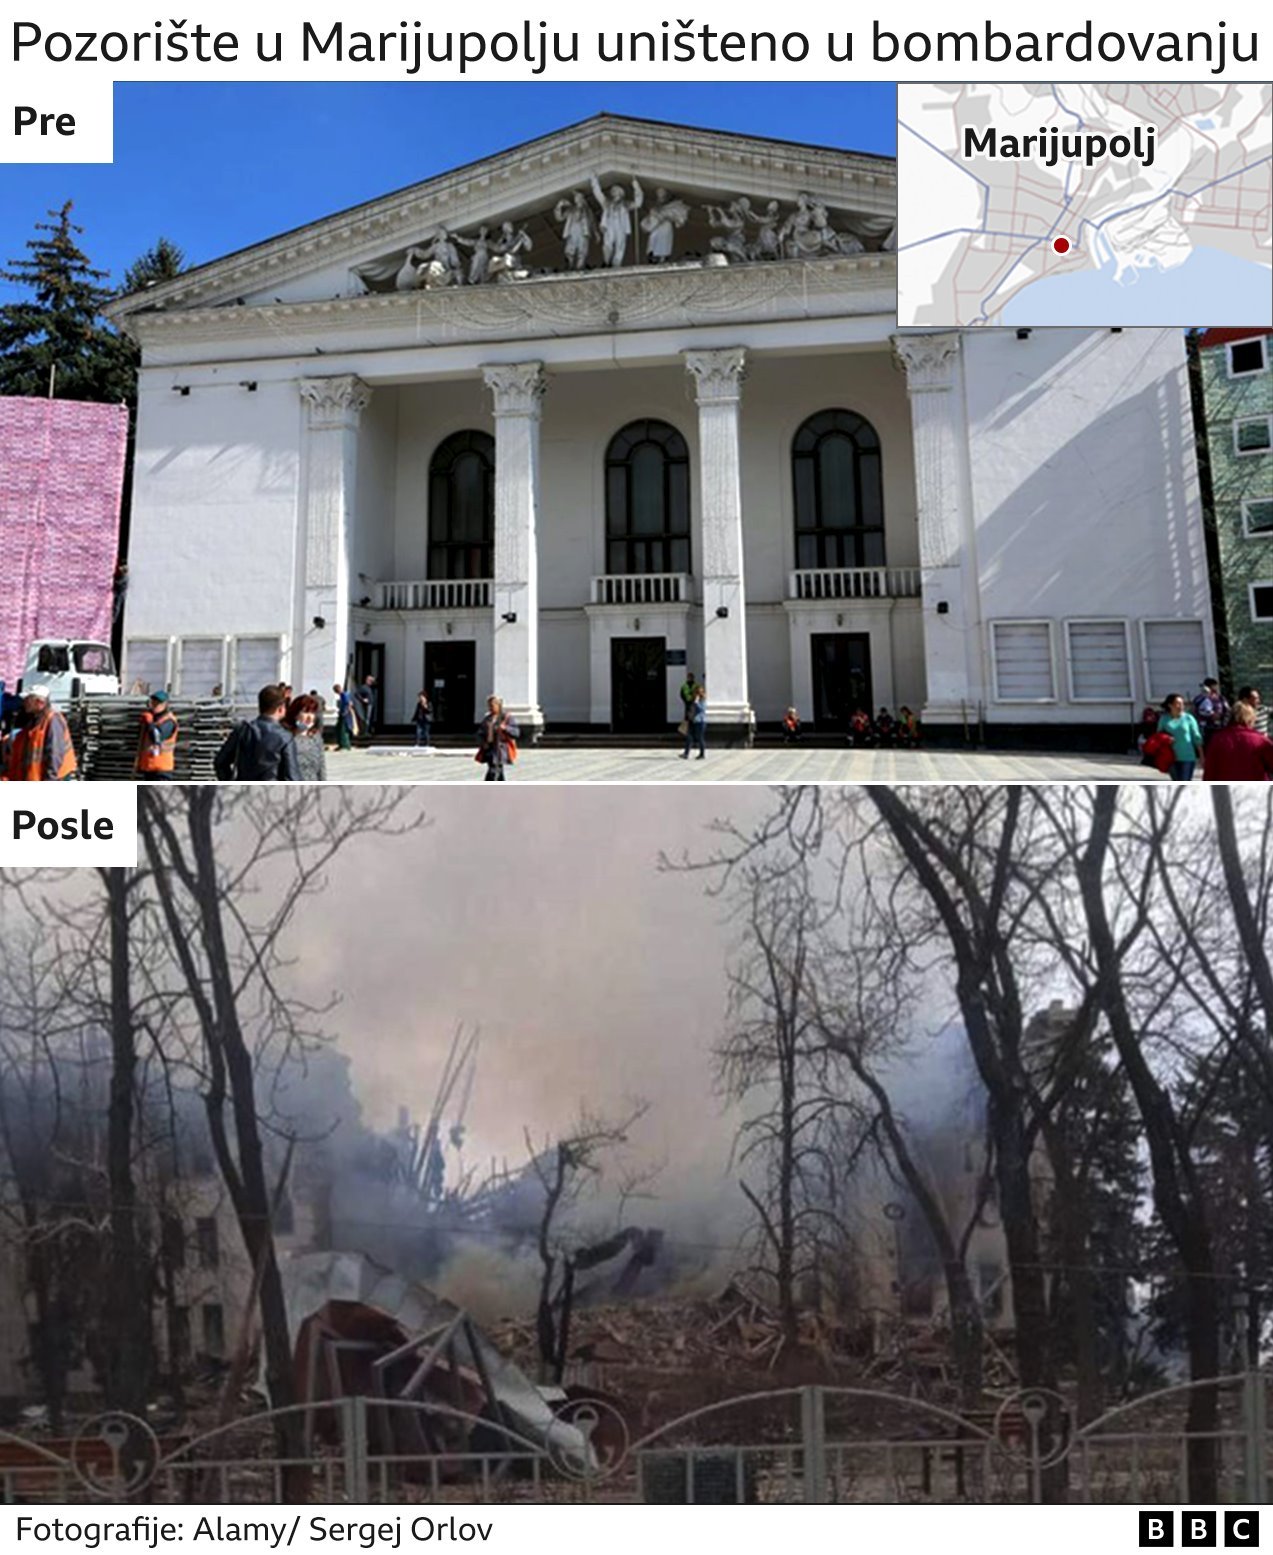 Pozorište u Marijupolju pre i posle napada